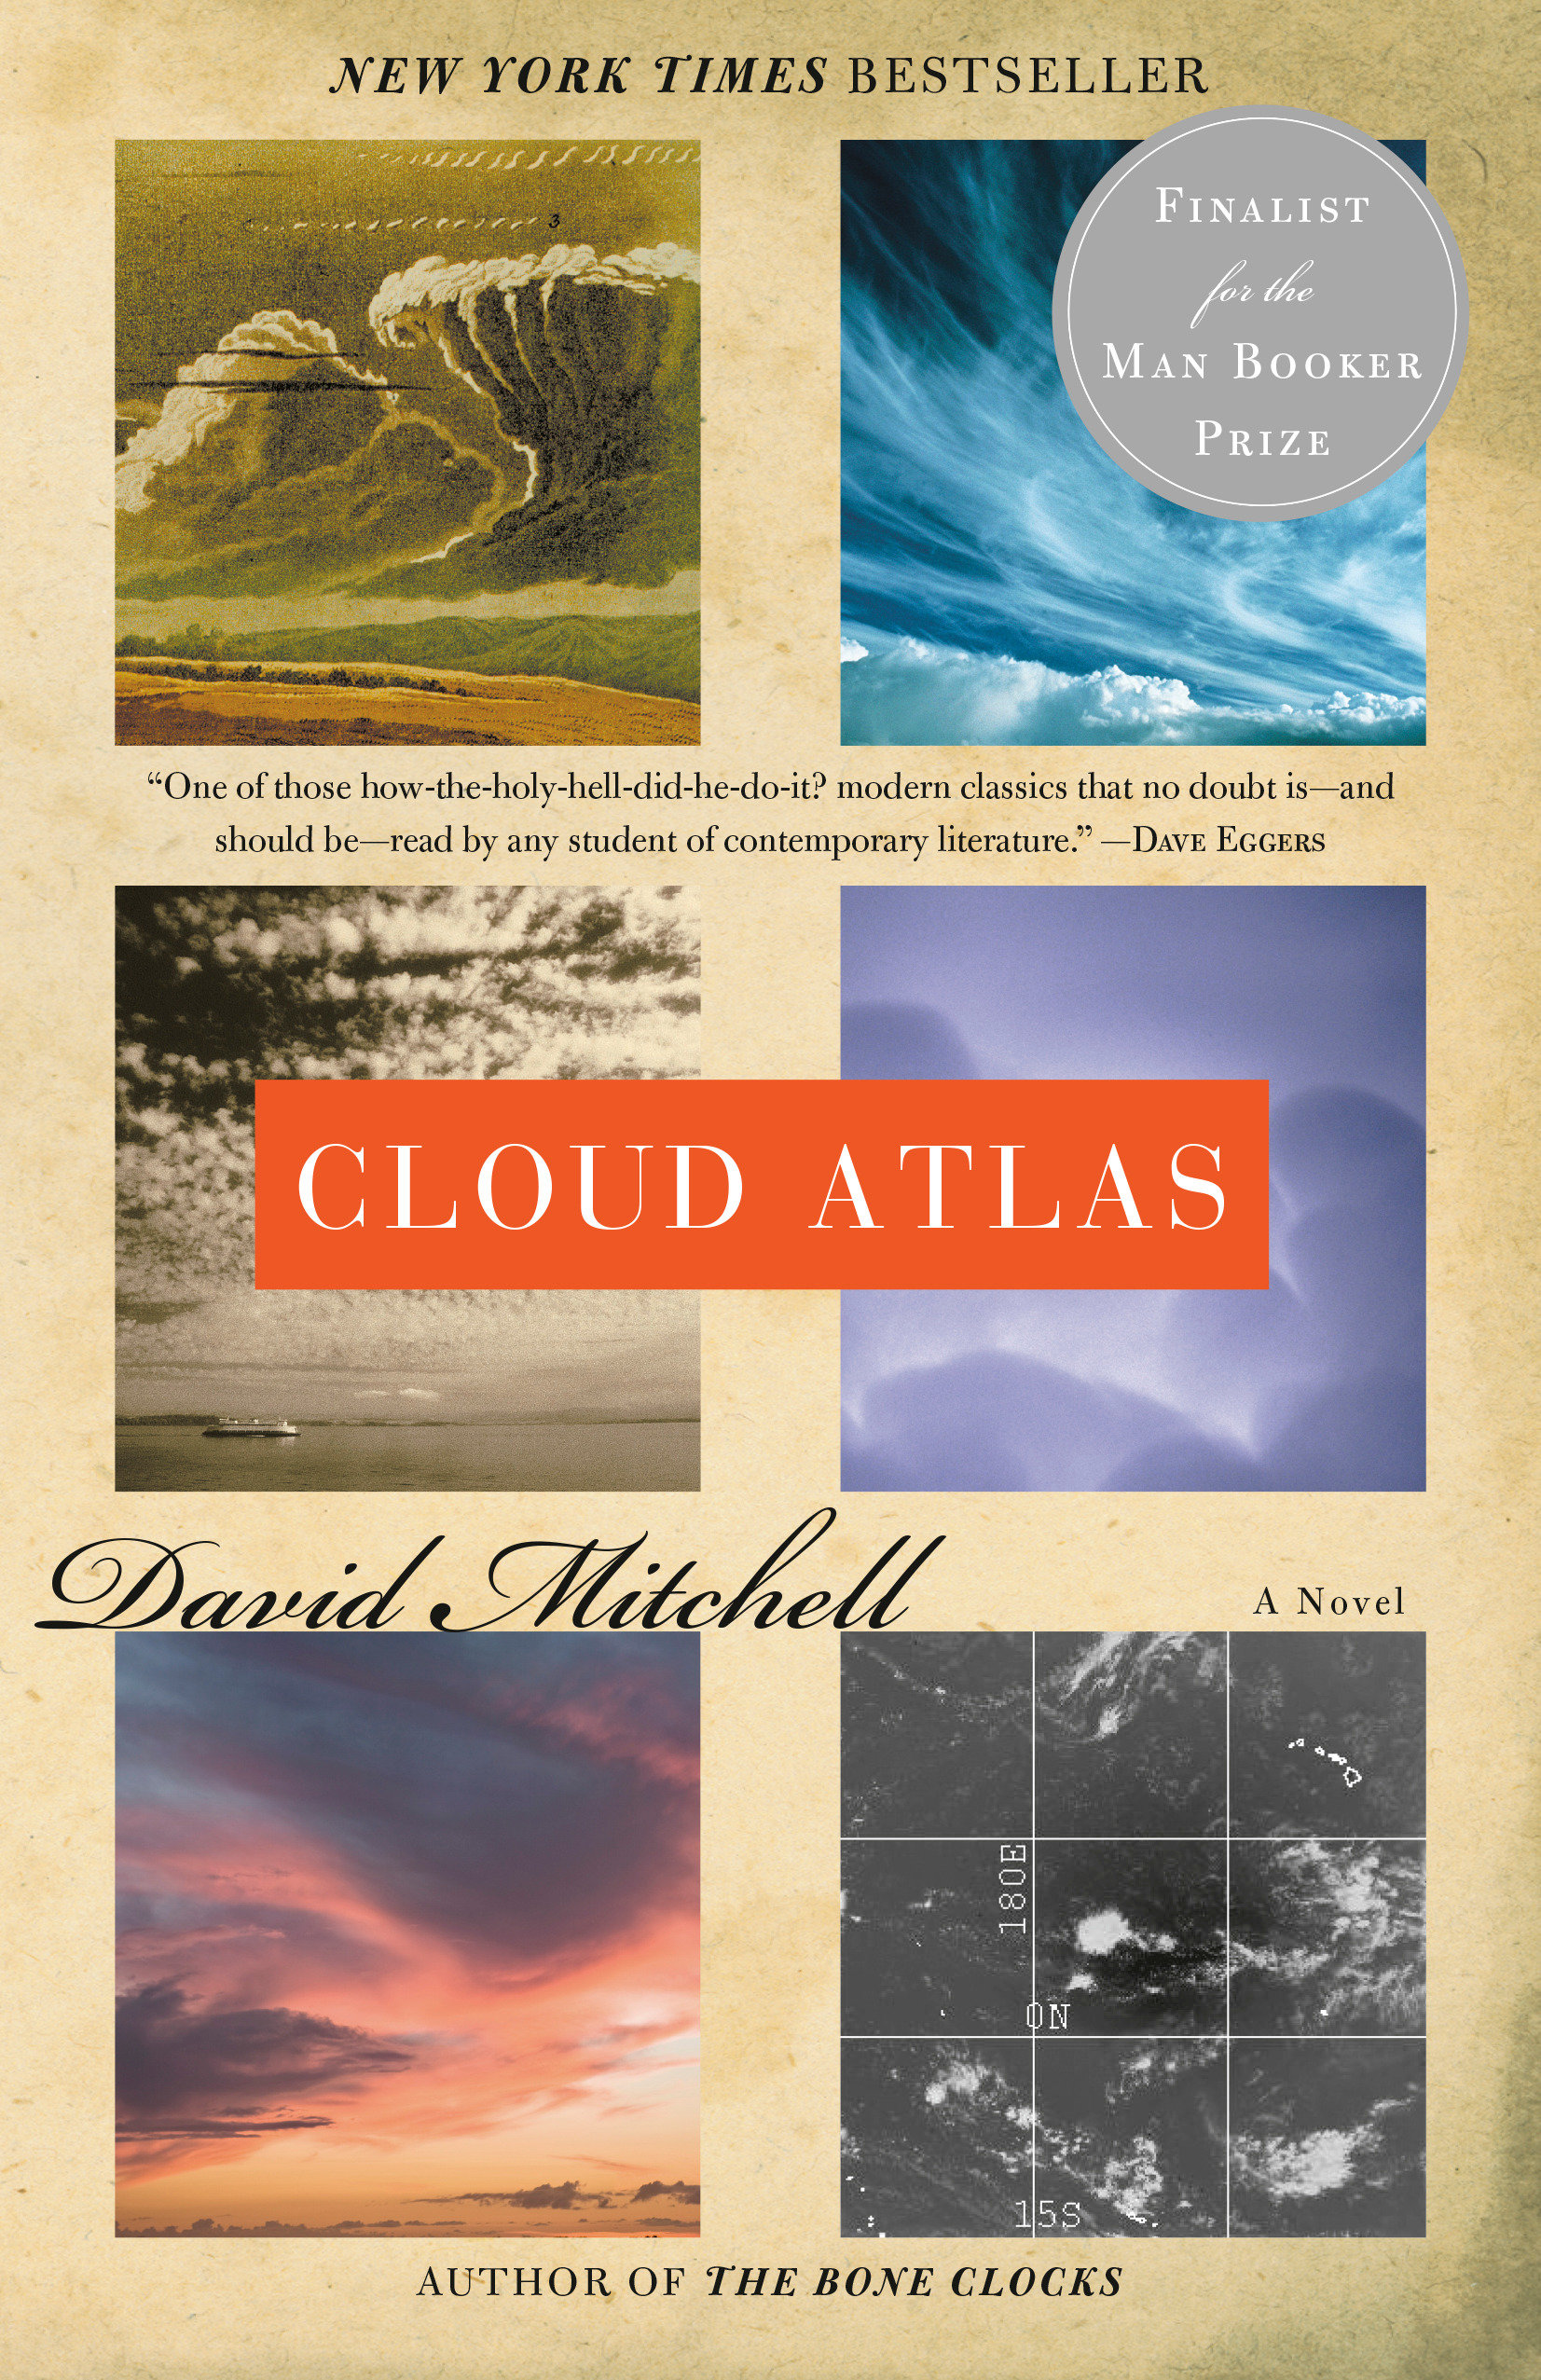 Cloud atlas cover image